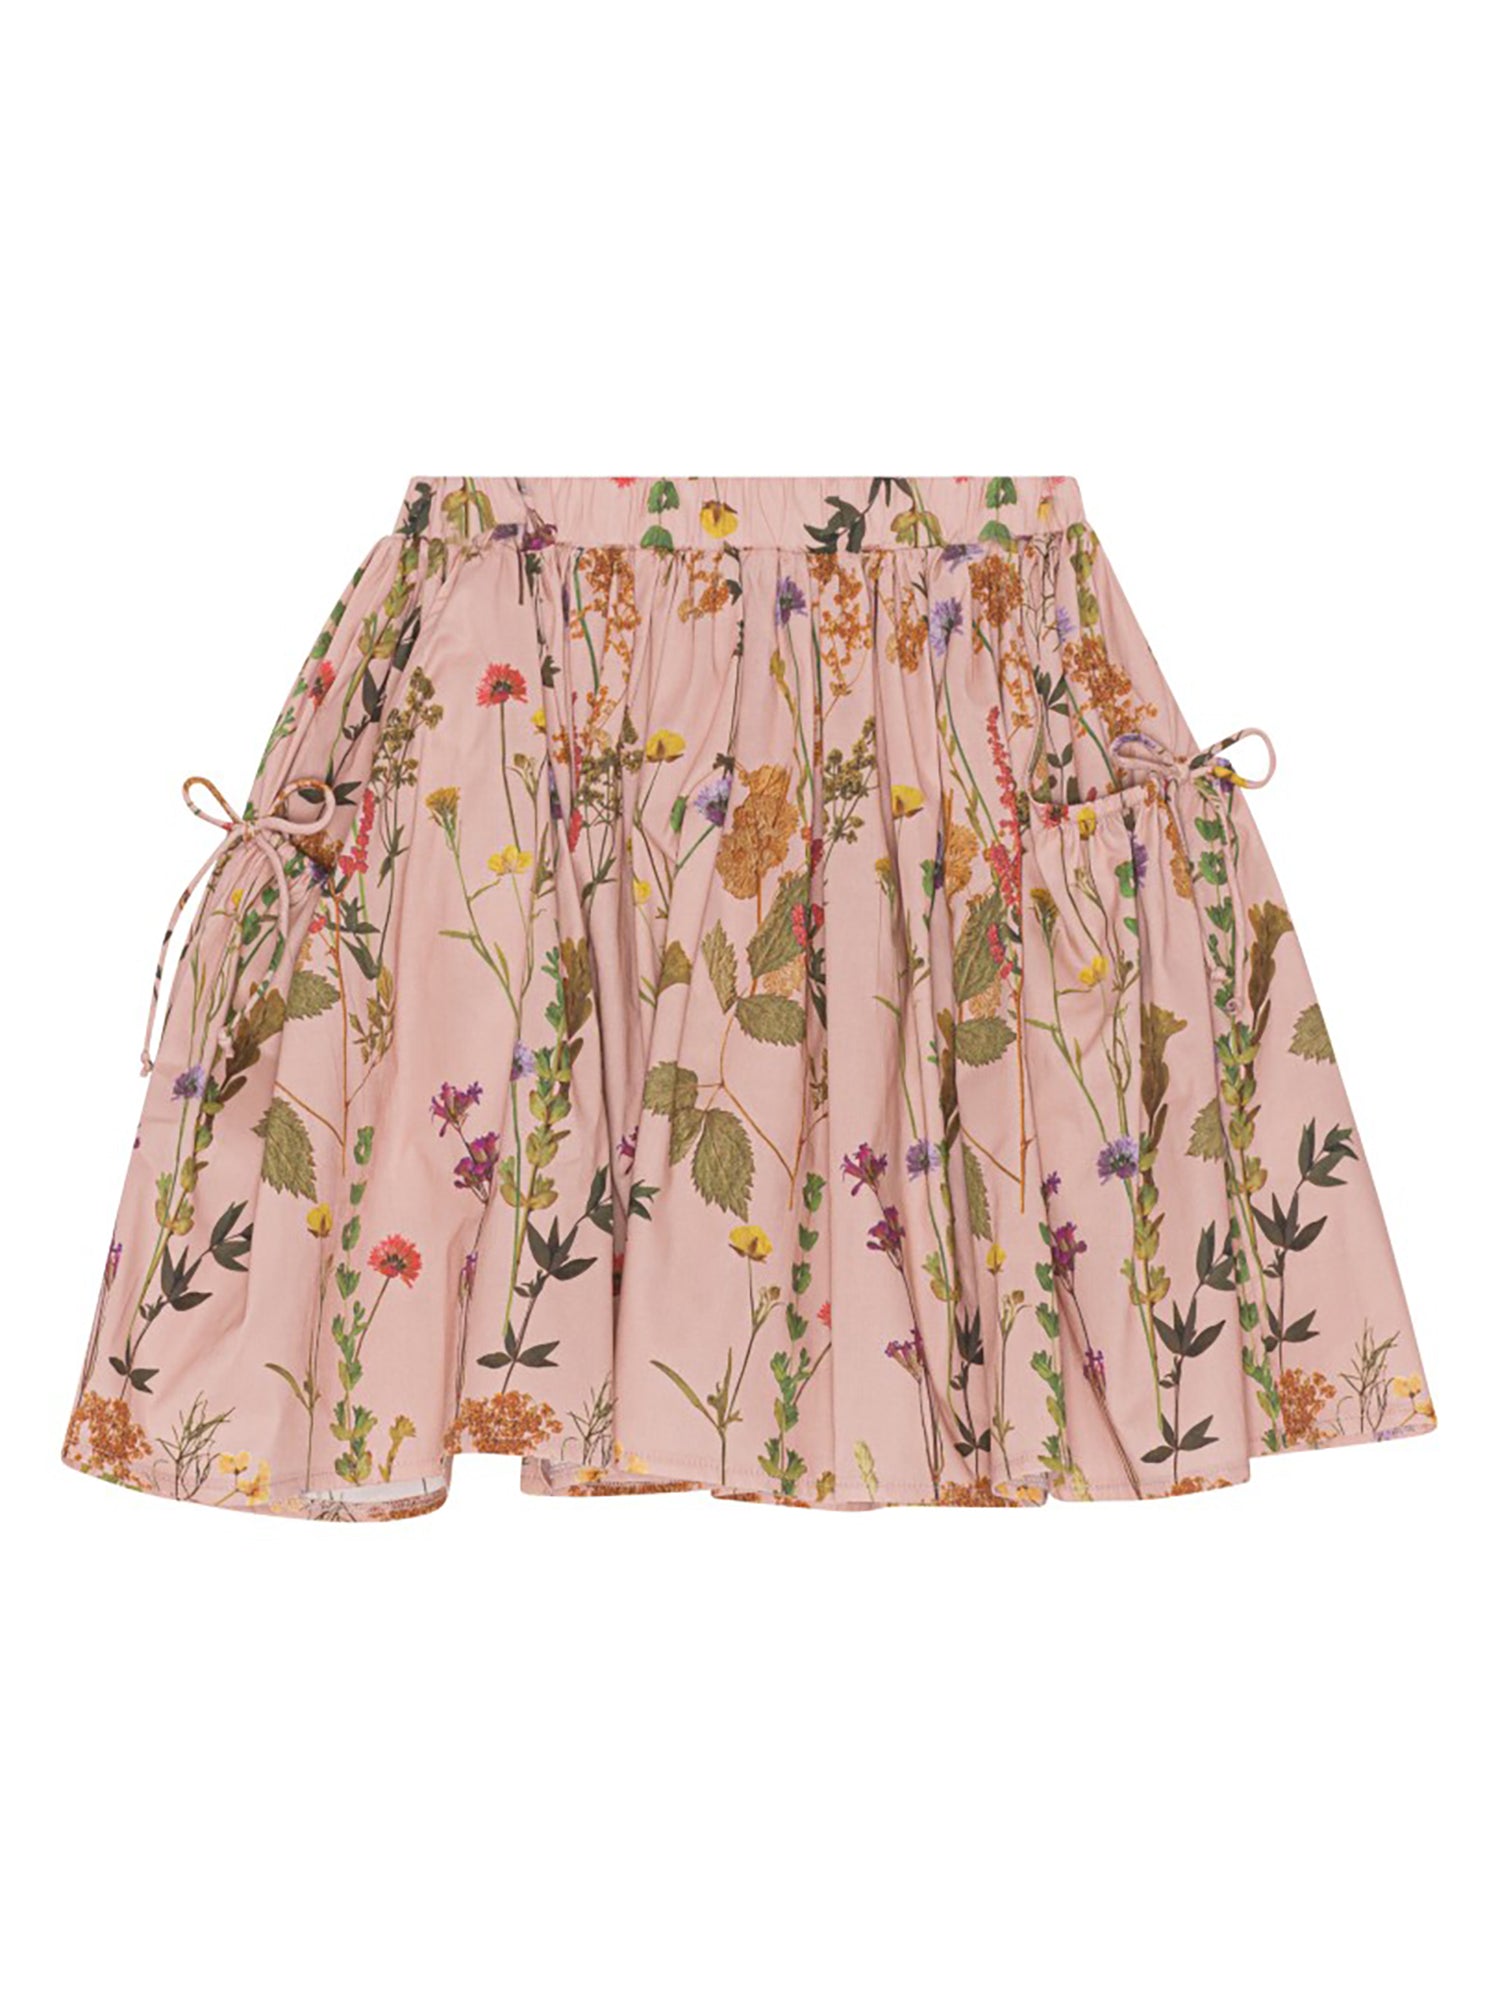 Christina Rohde Jungle Print Skirt